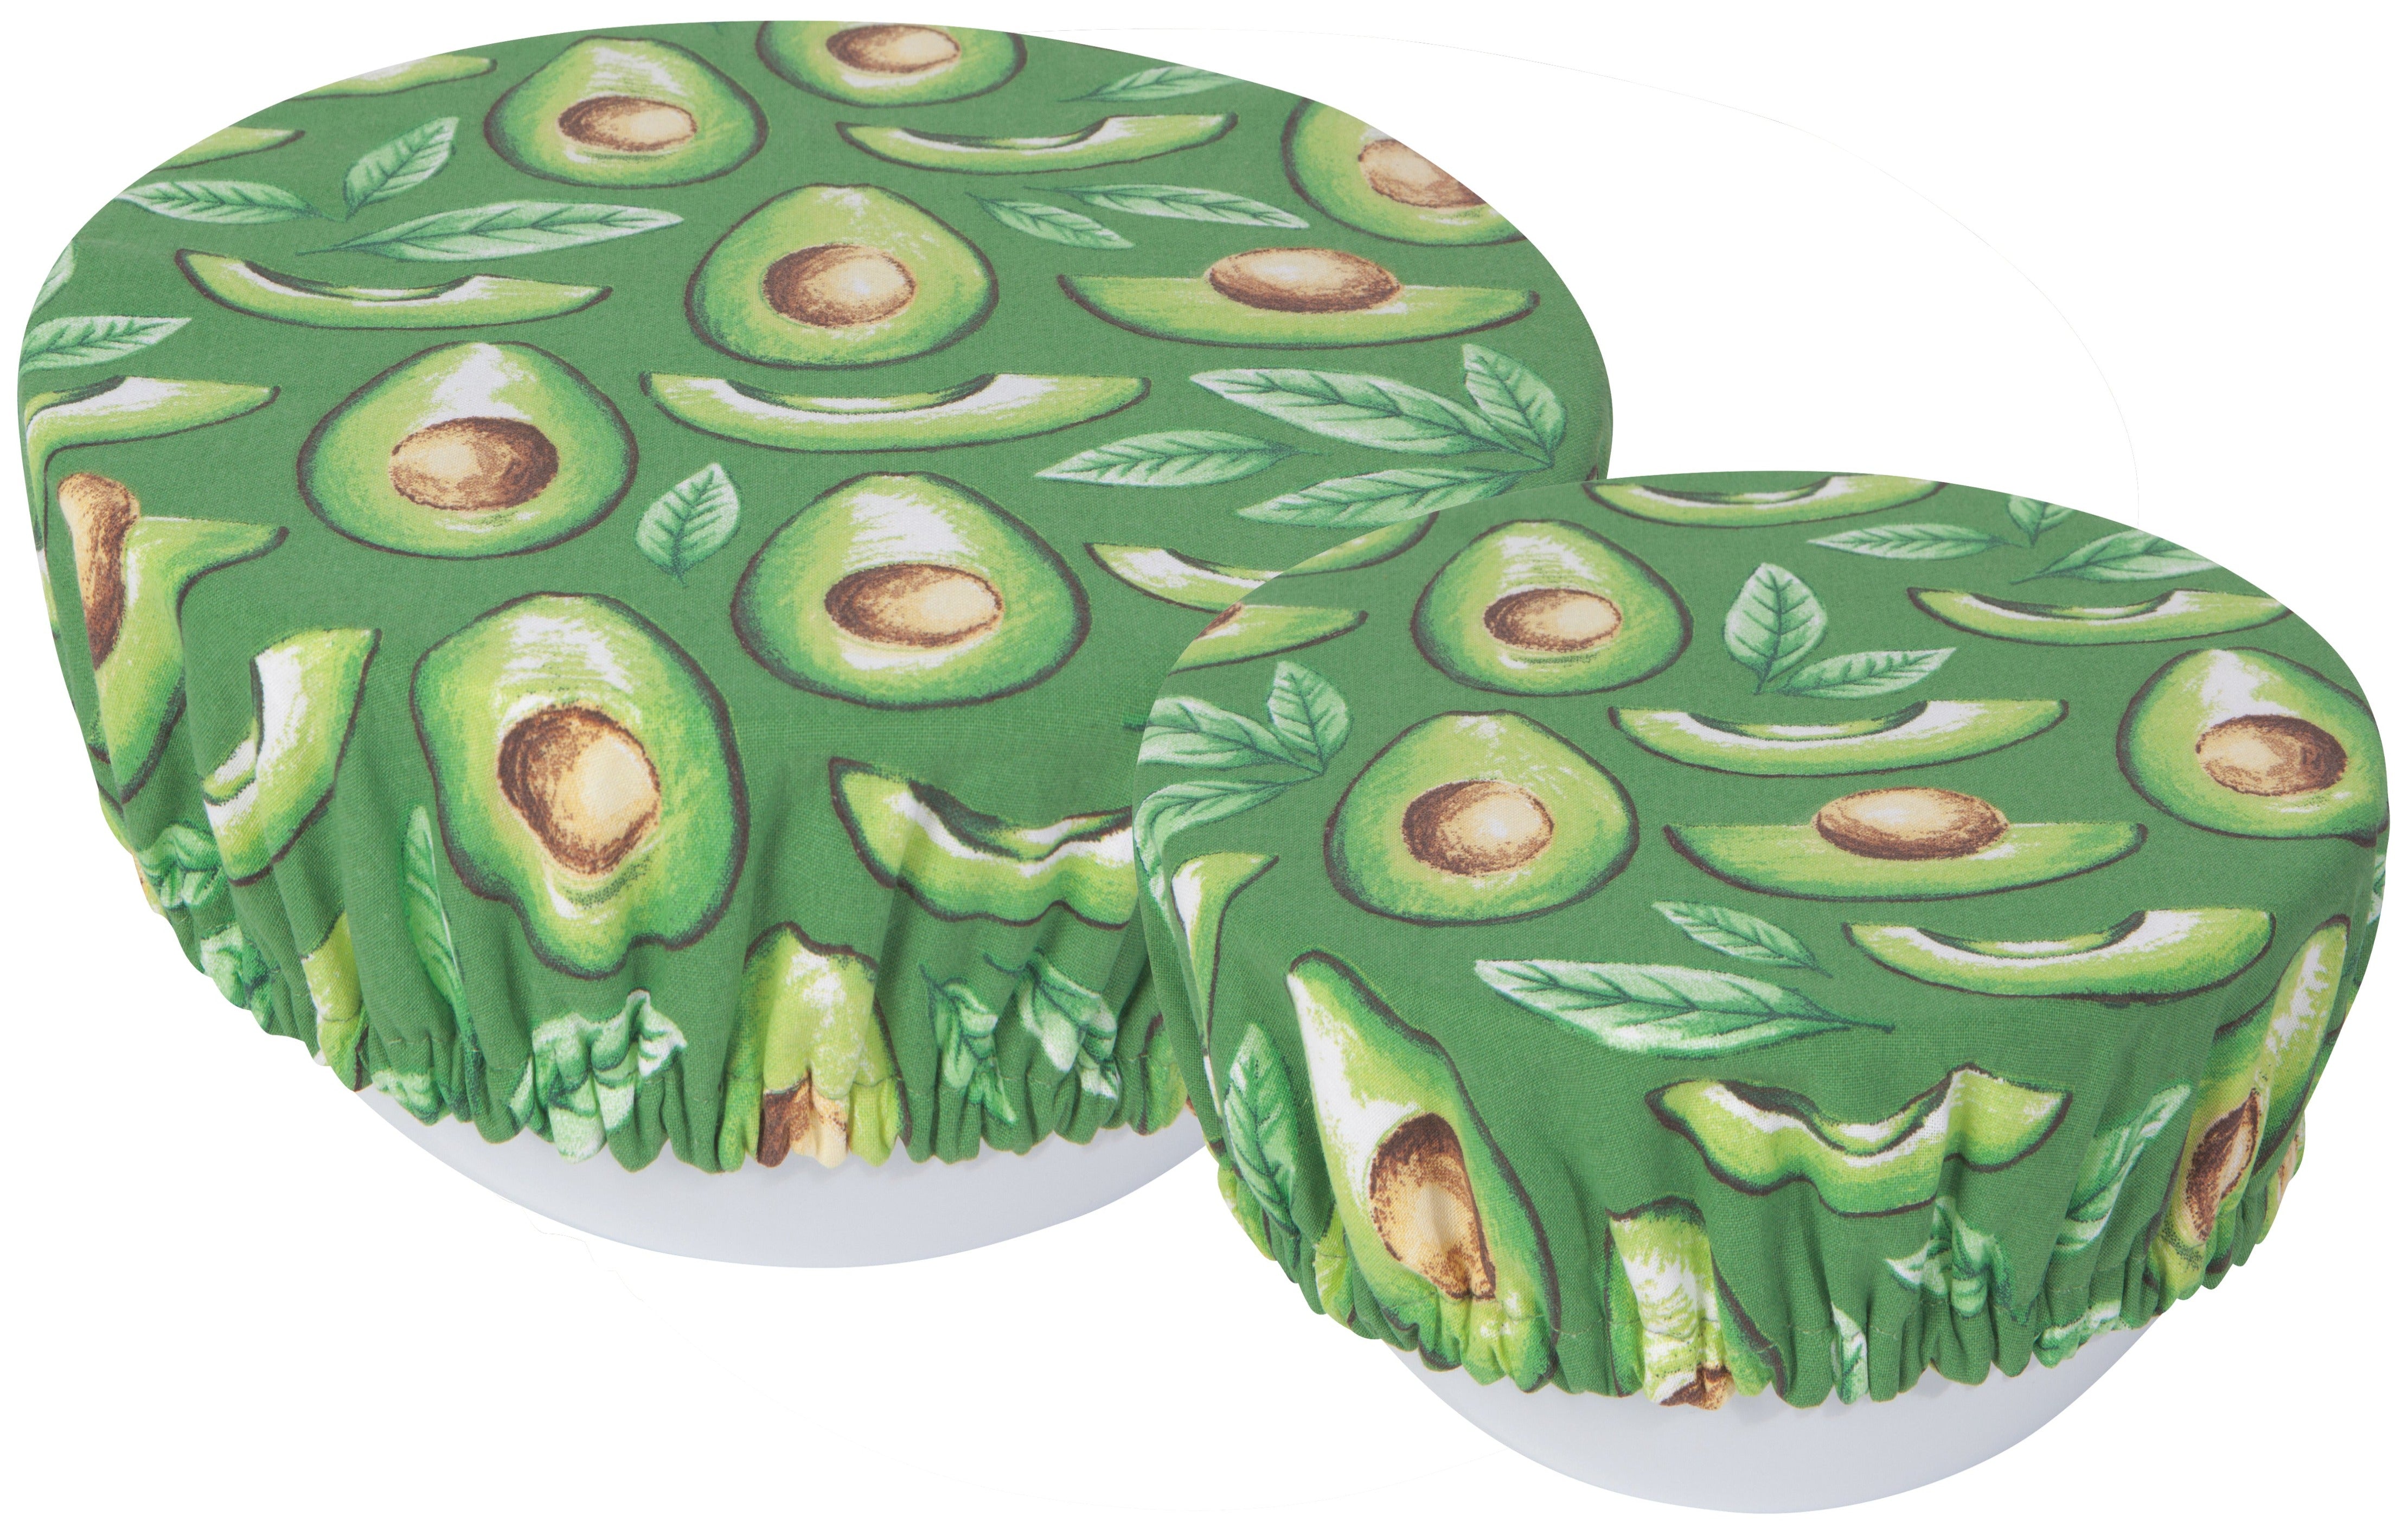 Avocado Bowl Covers, Set of 2